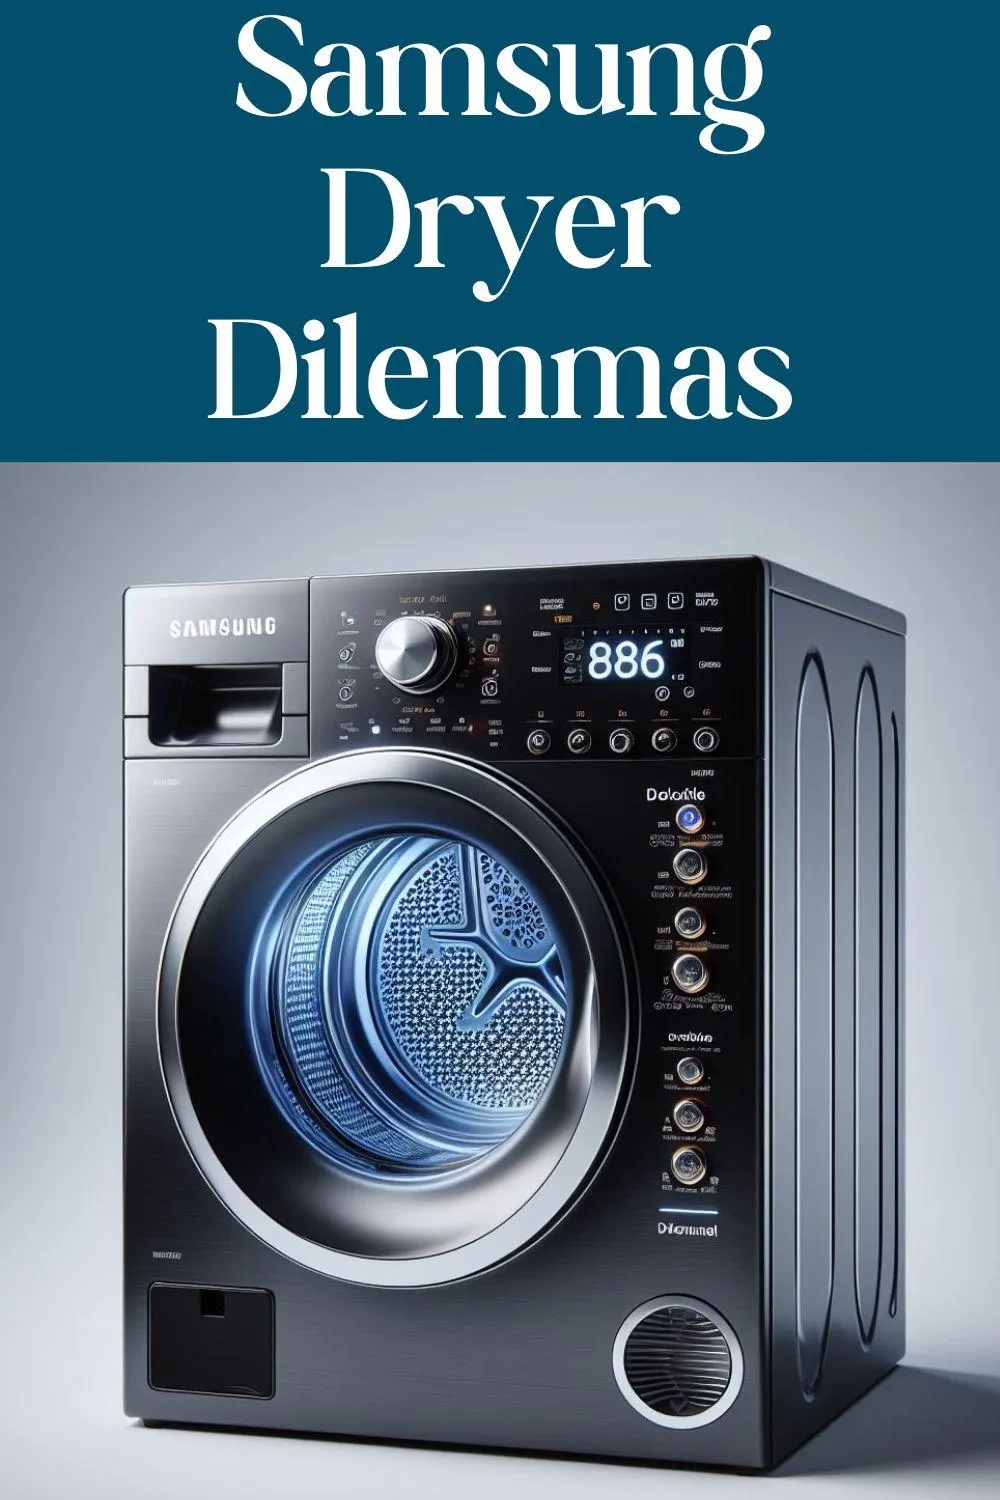 Navigate Samsung Dryer Dilemmas Like a Pro